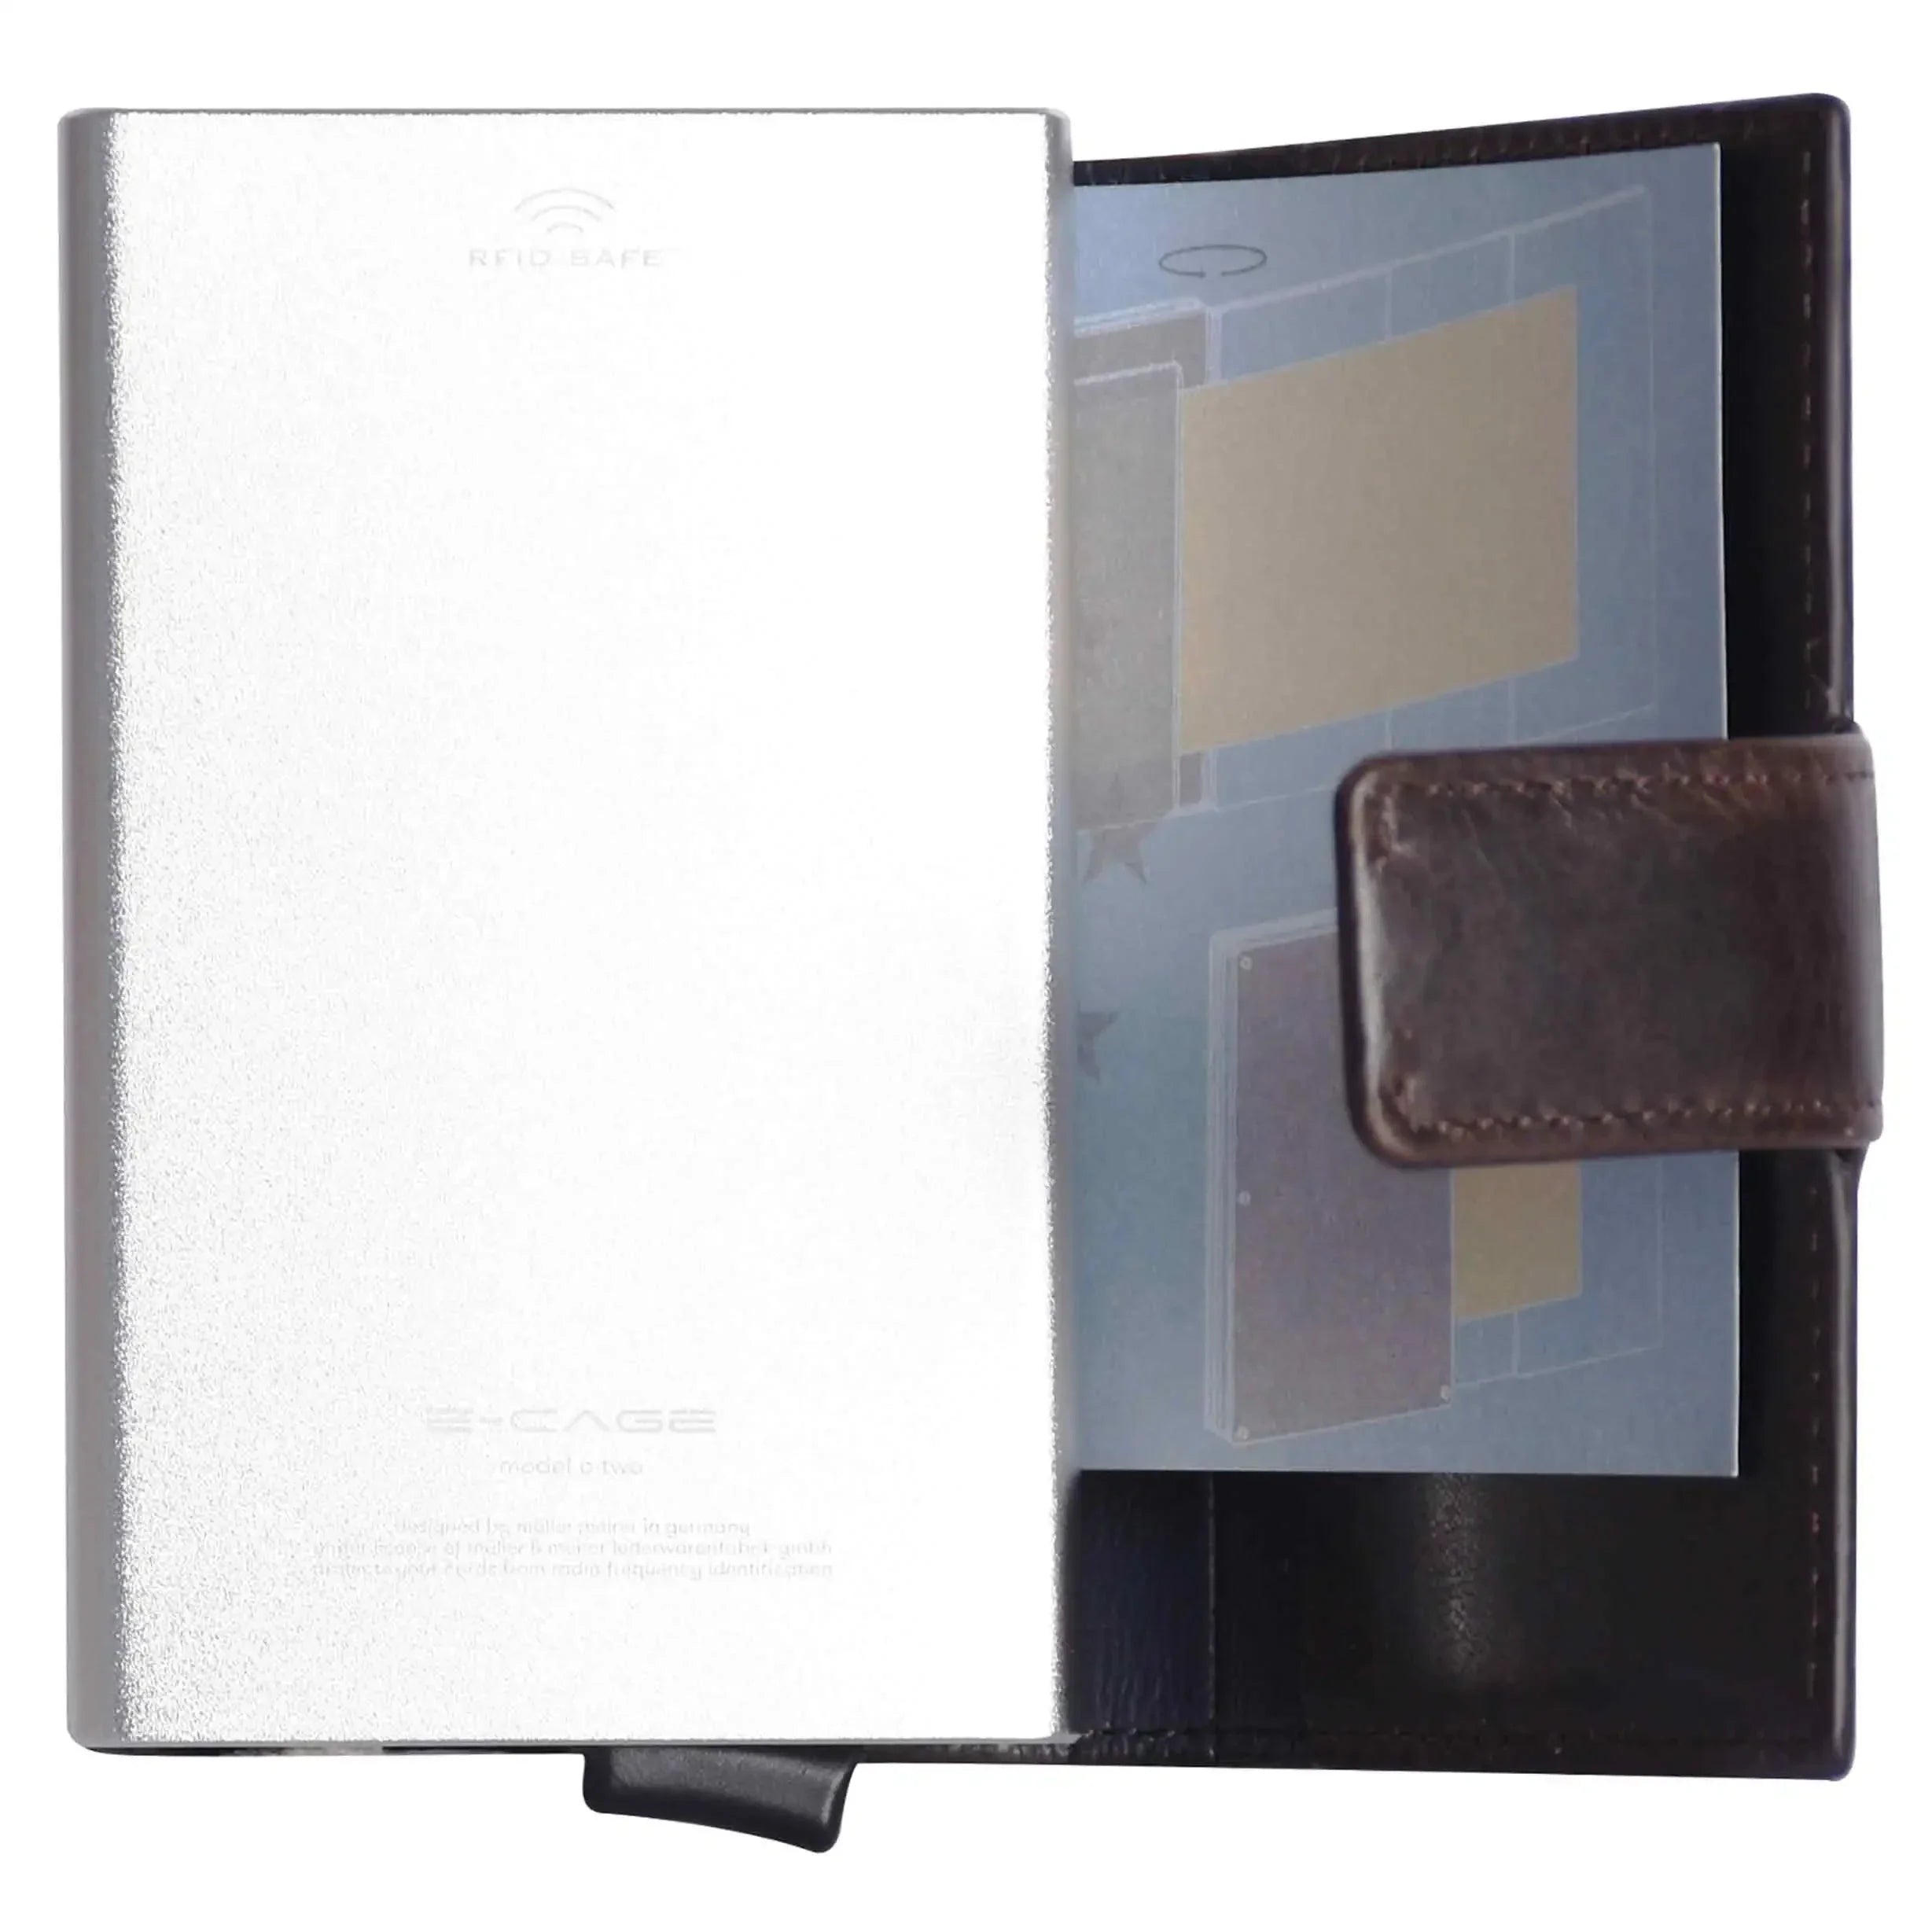 Maitre Birkheim C-Two E-Cage SV8 Wallet 10 cm - Dark Brown